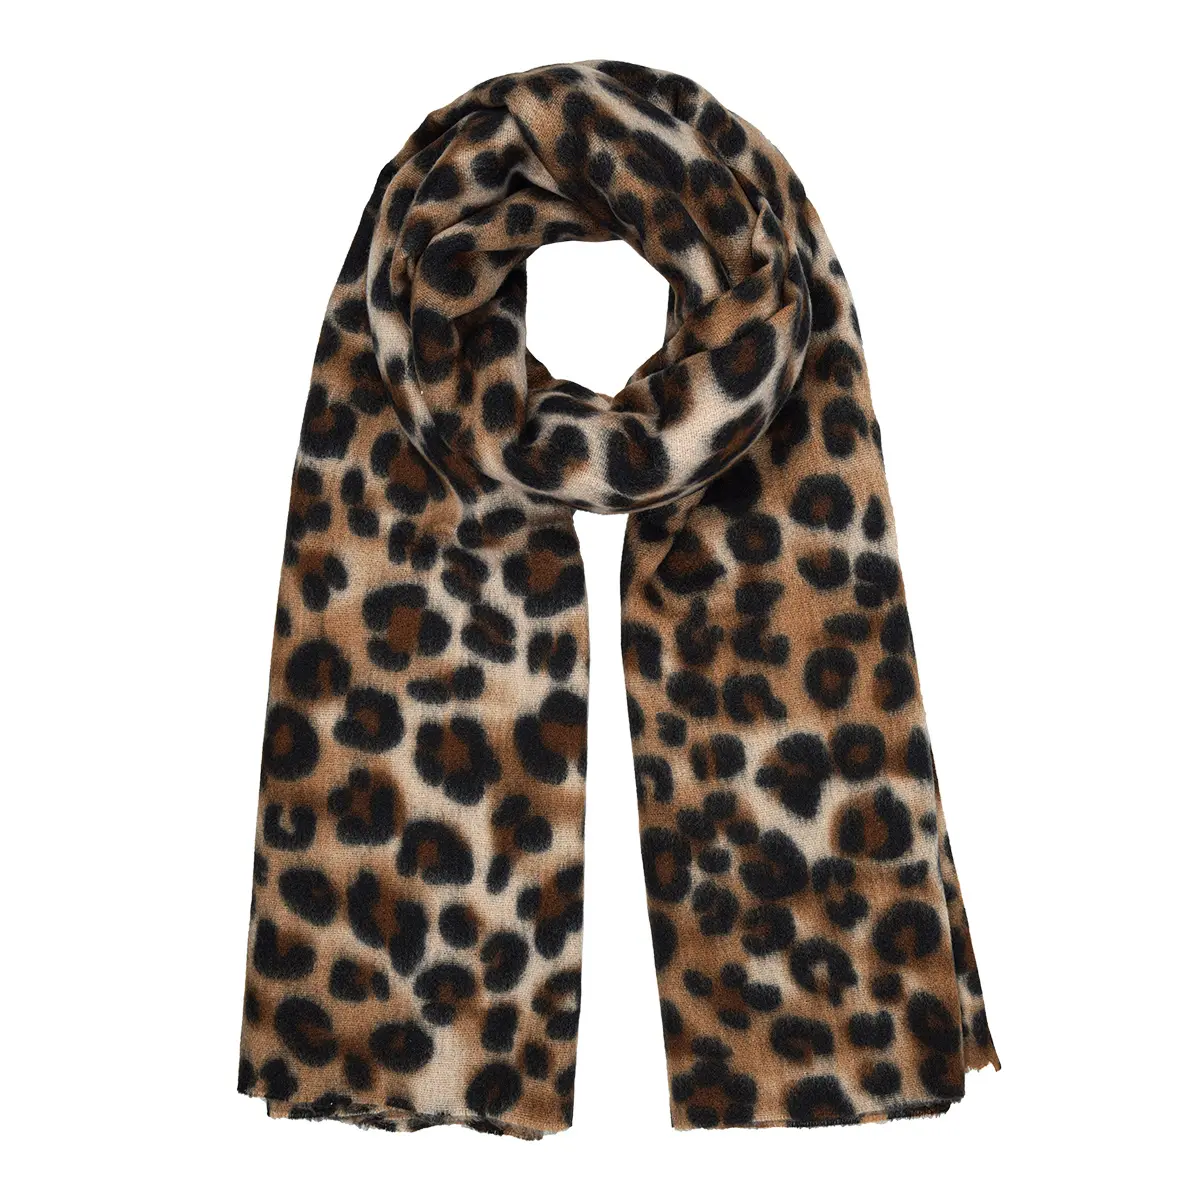 Wintersjaal Pretty Leopard bruin zwarte panter print sjaals dikke warme sjaals omslagdoeken dames winteraccesssoires kopen